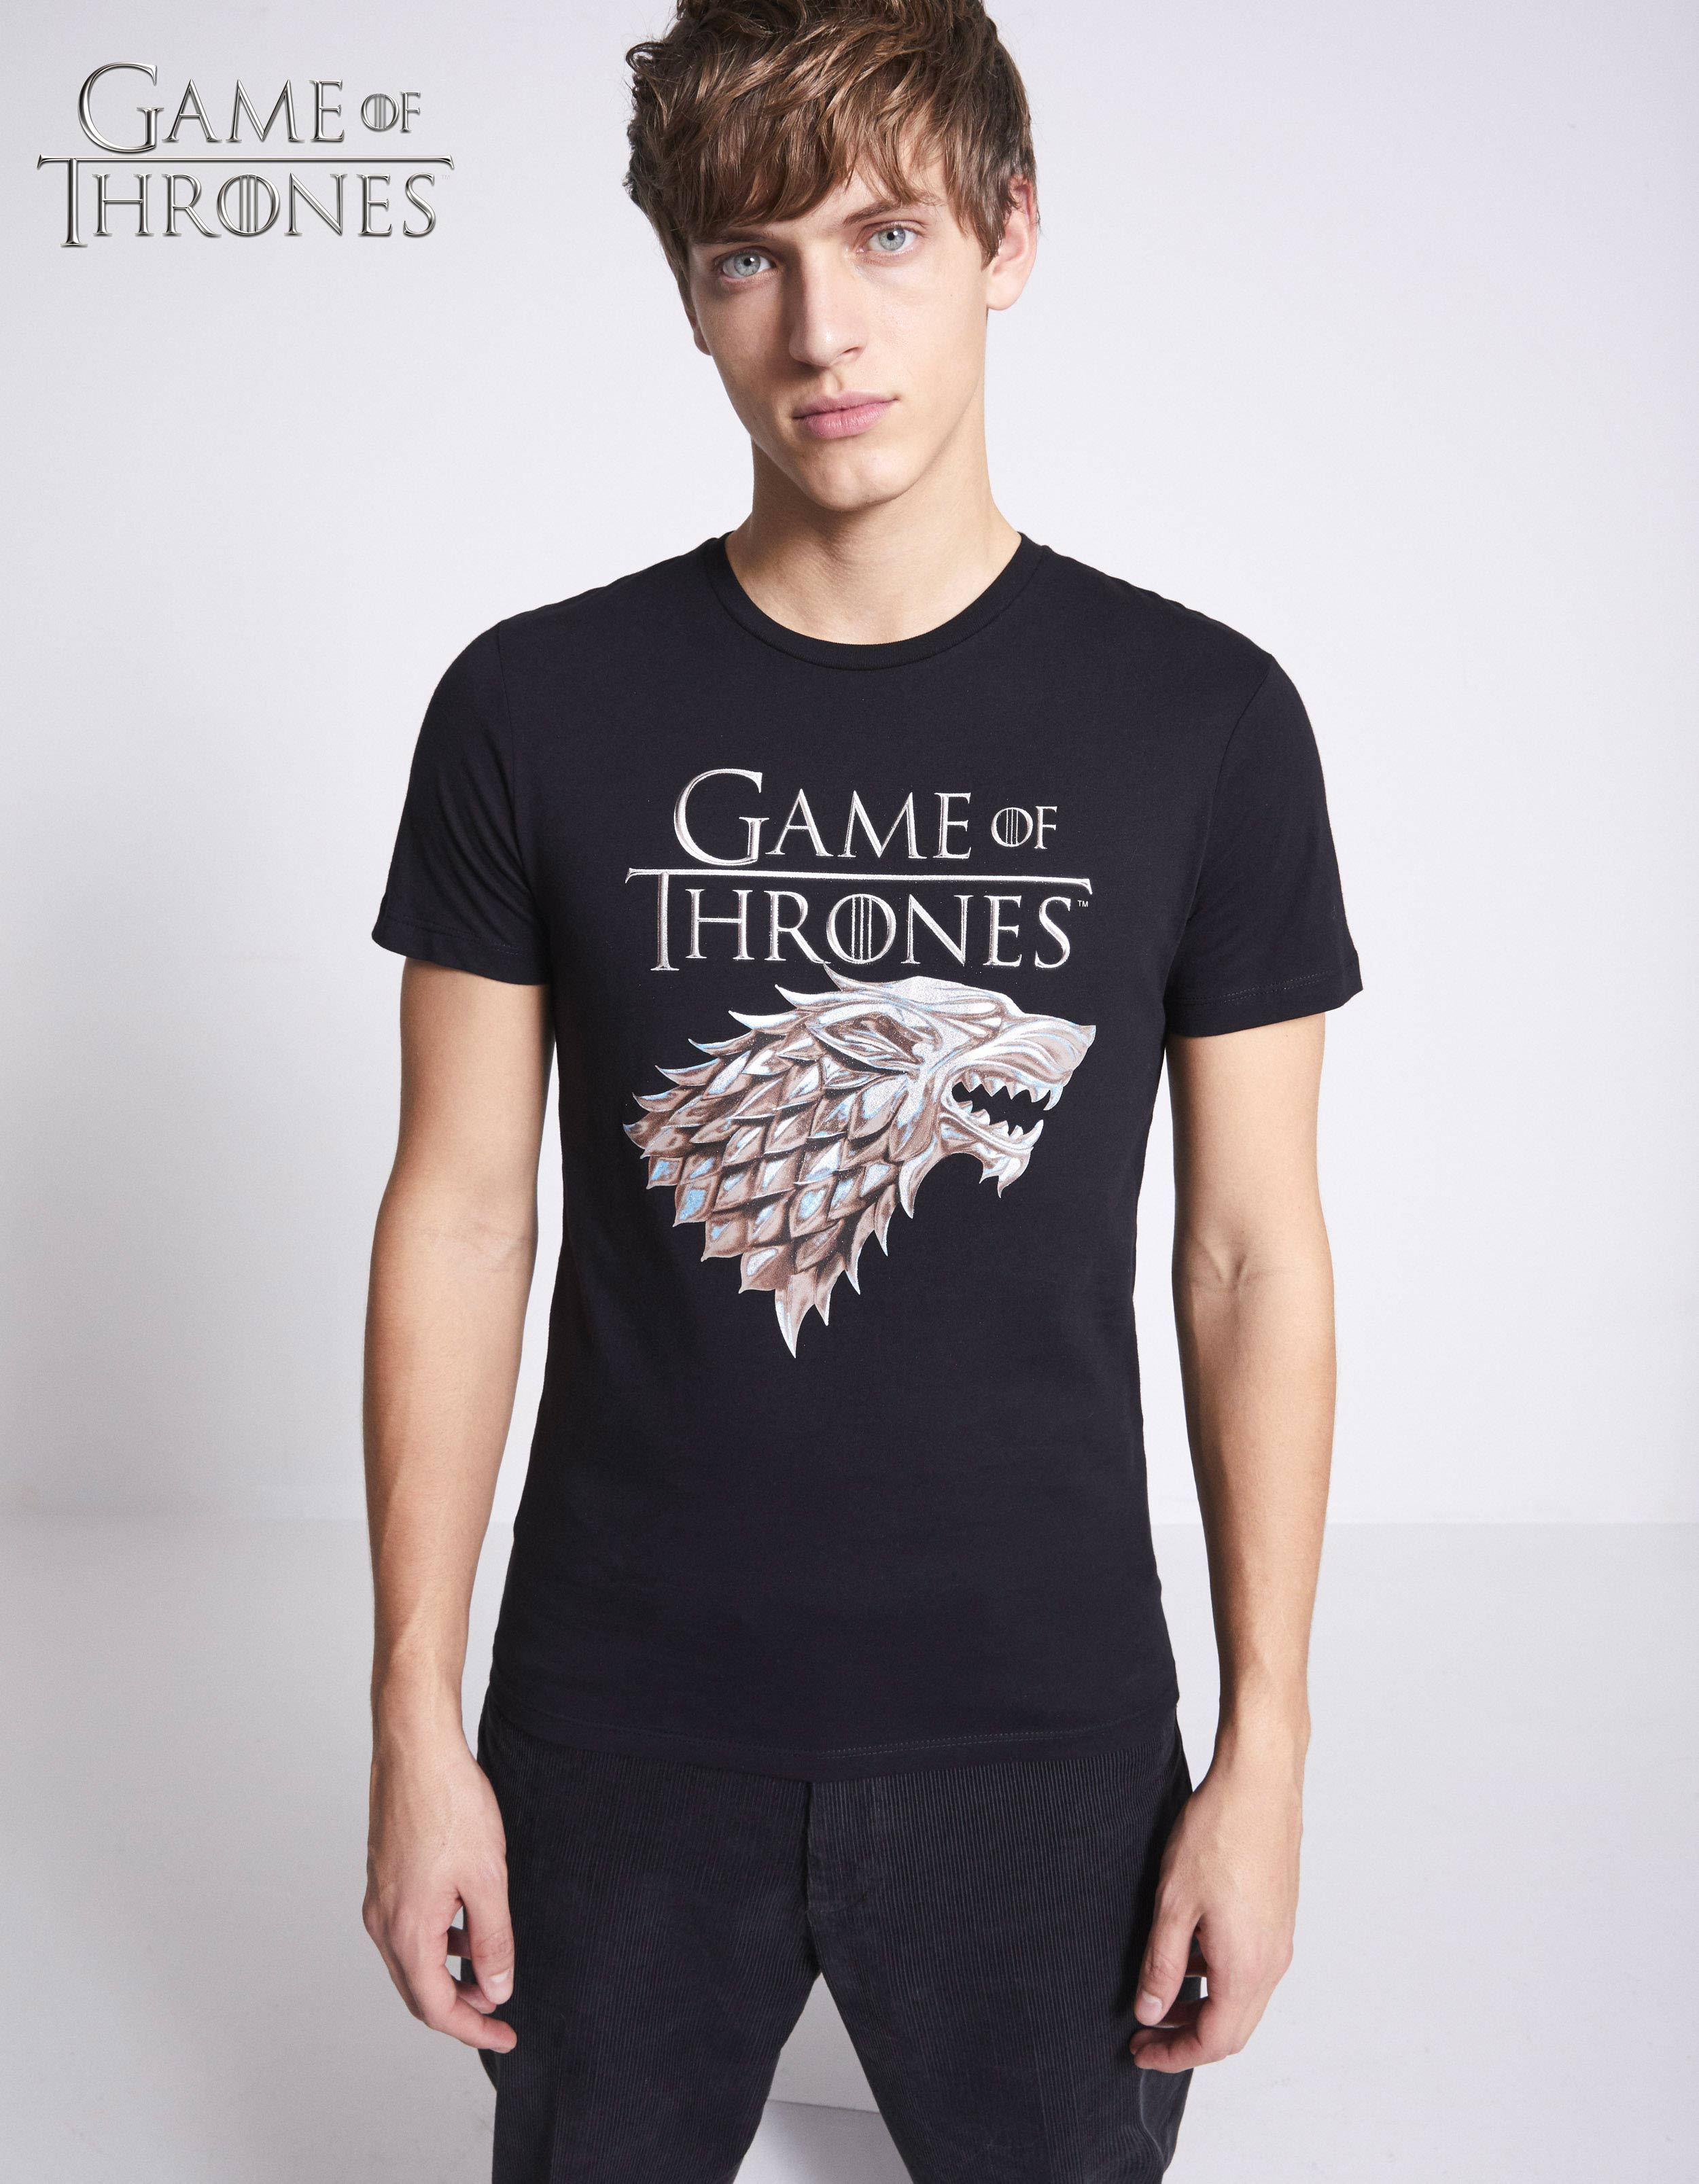 T-shirt Celio Game of thrones 100% coton en solde à 5€ au lieu de 19,99